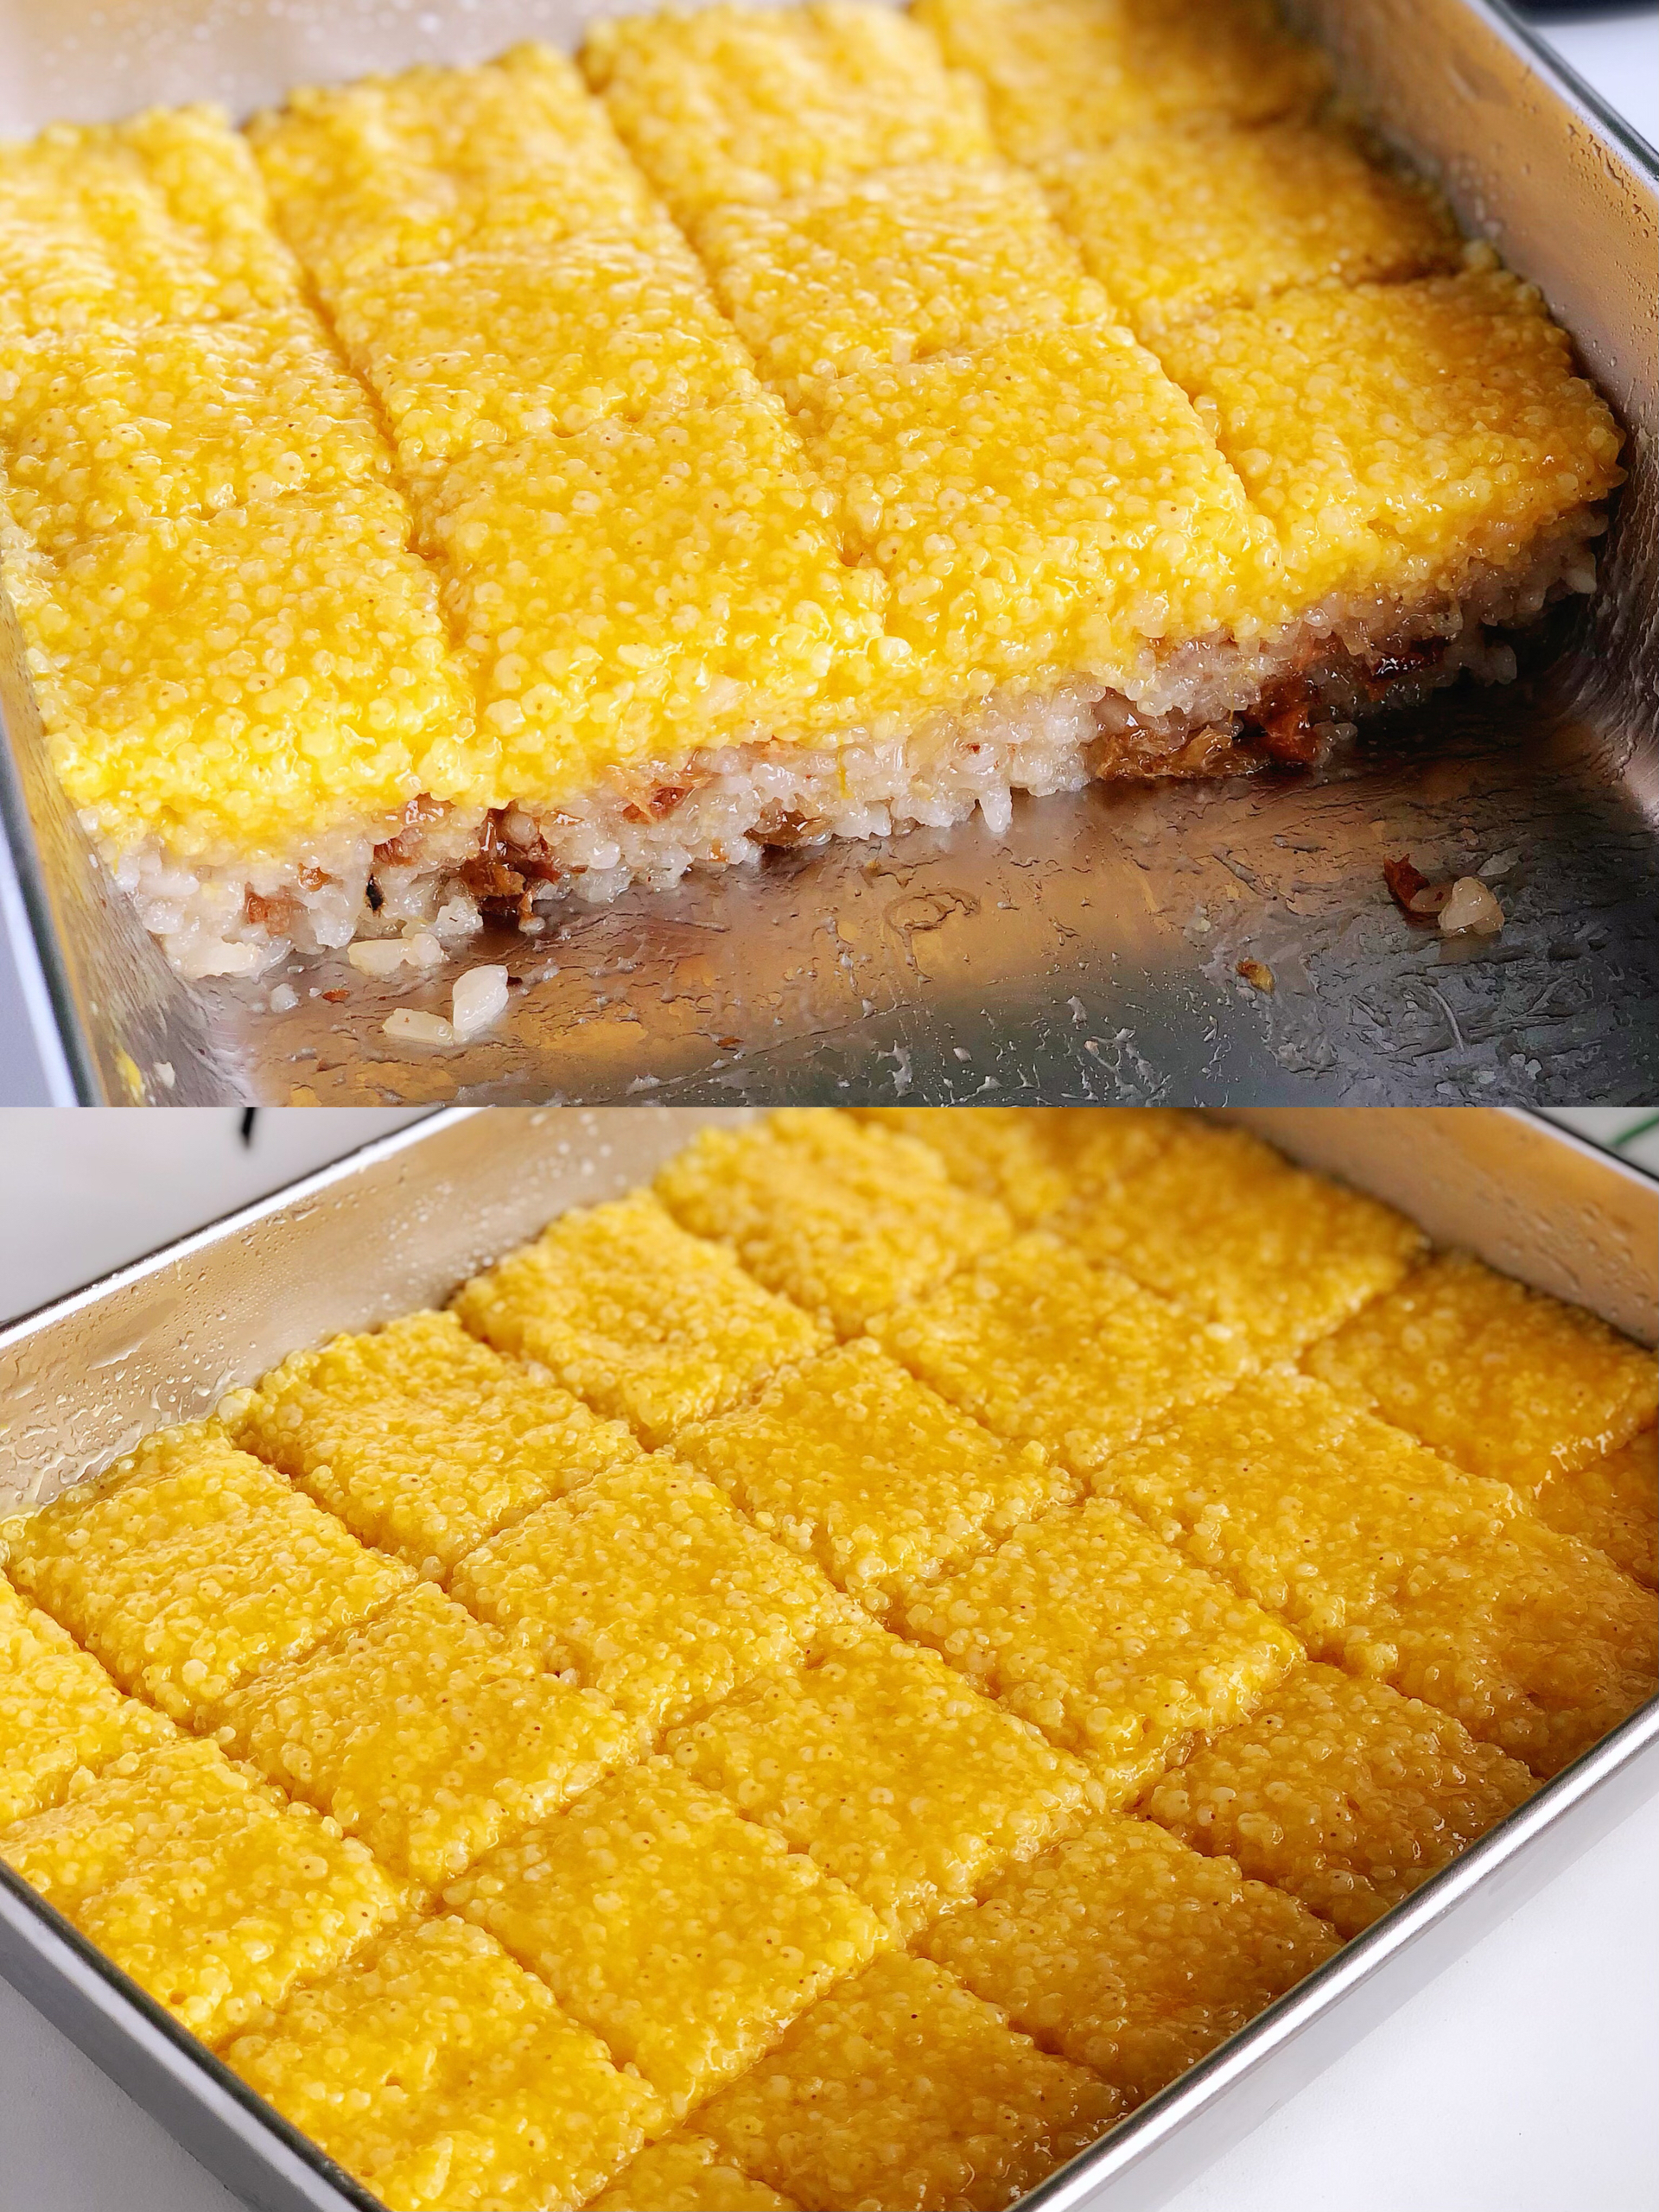 糯叽叽的黄米凉糕零失败做法，配方用量精准黏黏糯糯不甜腻，百分百还原